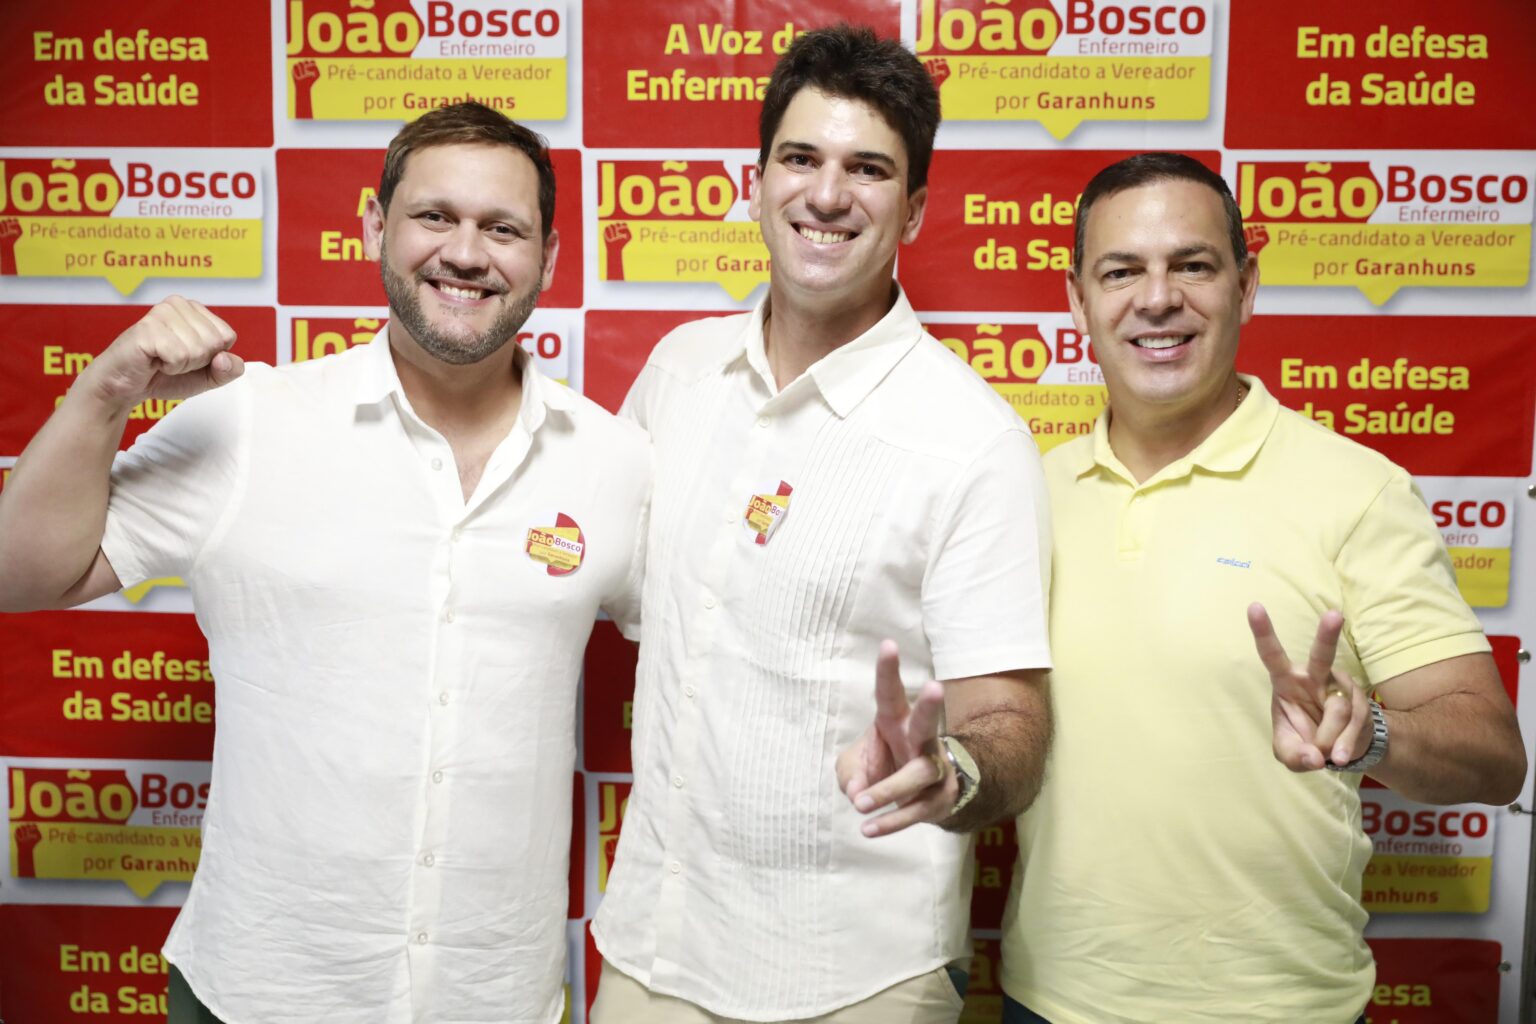  Deputado Gilmar Júnior impulsiona lançamento da pré-campanha de João Bosco Enfermeiro em Garanhuns